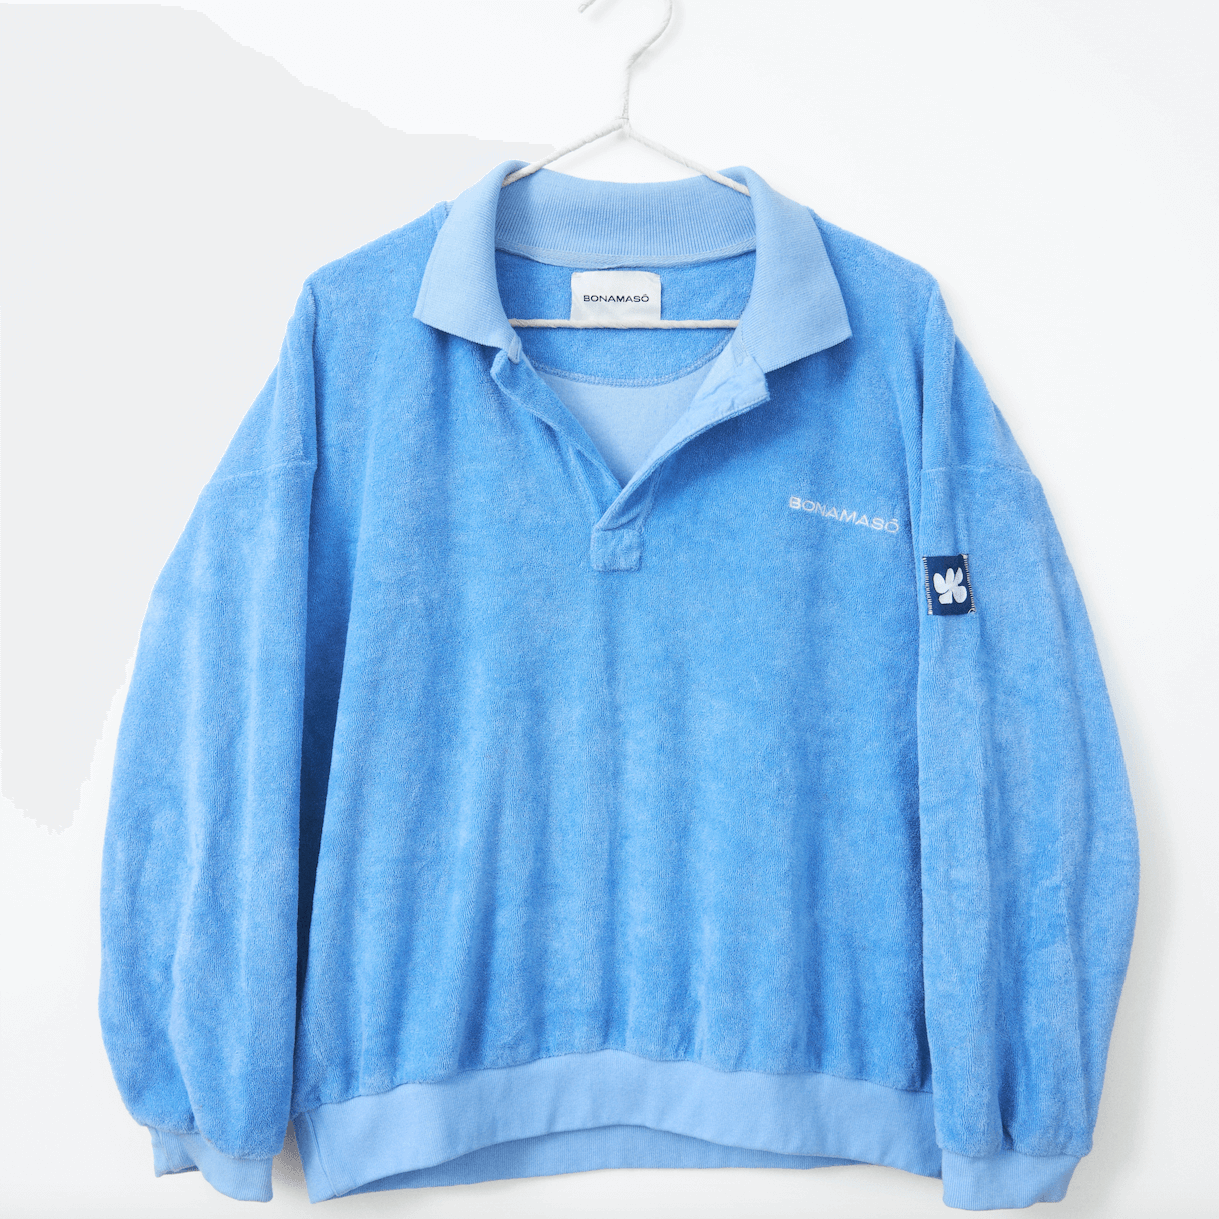 BONAMASO-Blue-Terry-Jersey-Sweater-3.png